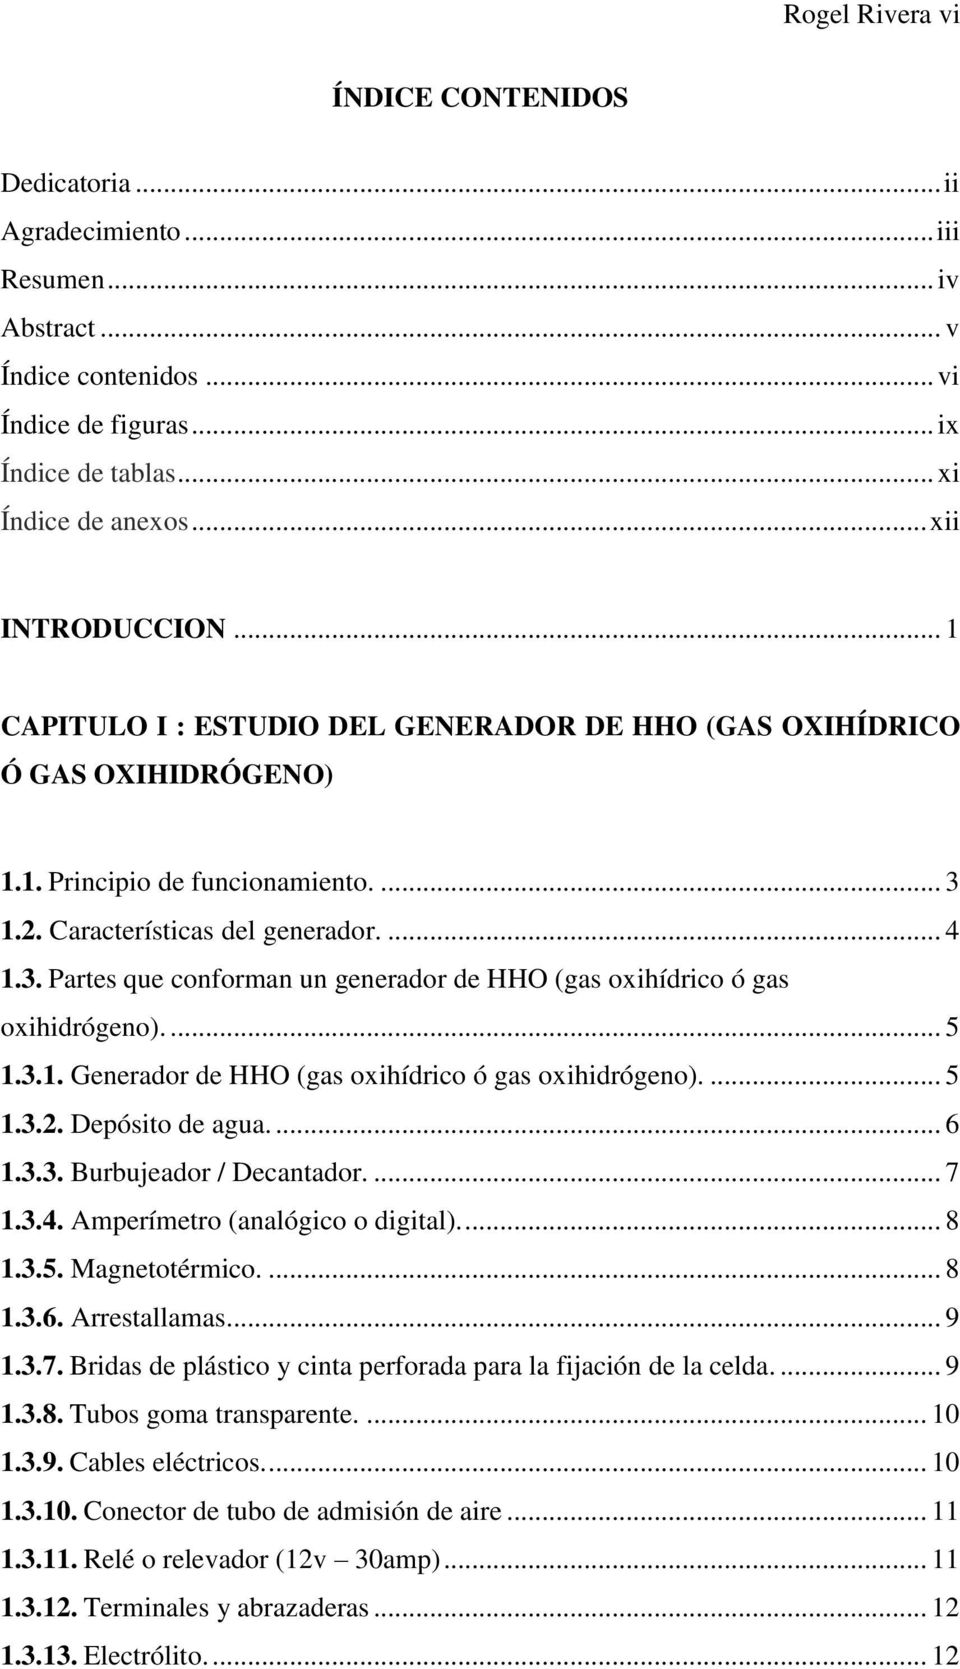 1.2. Características del generador.... 4 1.3. Partes que conforman un generador de HHO (gas oxihídrico ó gas oxihidrógeno).... 5 1.3.1. Generador de HHO (gas oxihídrico ó gas oxihidrógeno).... 5 1.3.2. Depósito de agua.